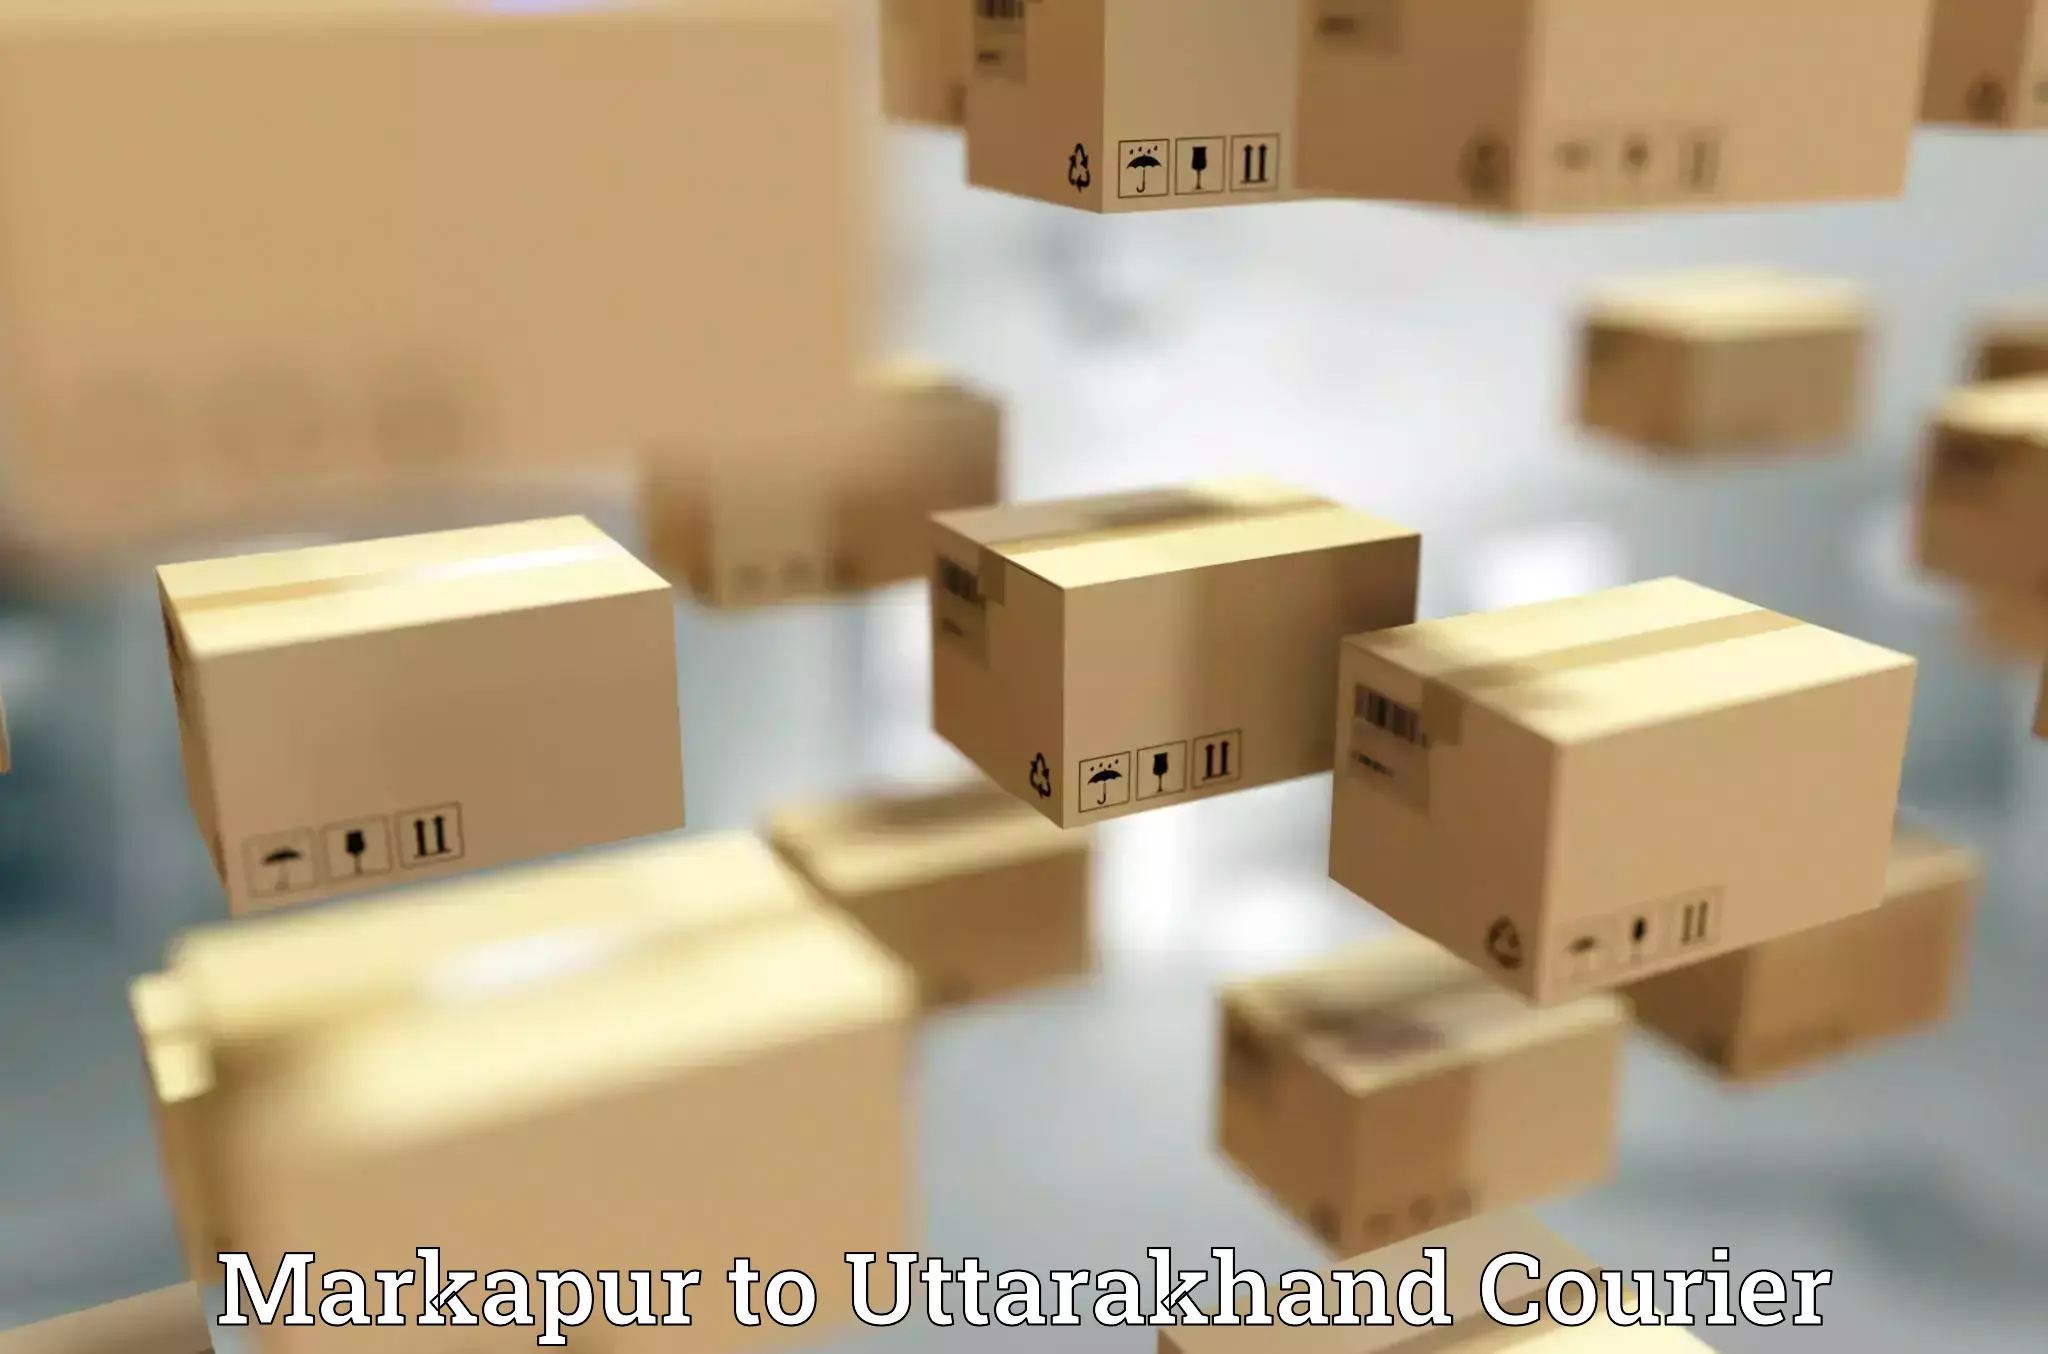 International courier networks Markapur to Uttarakhand